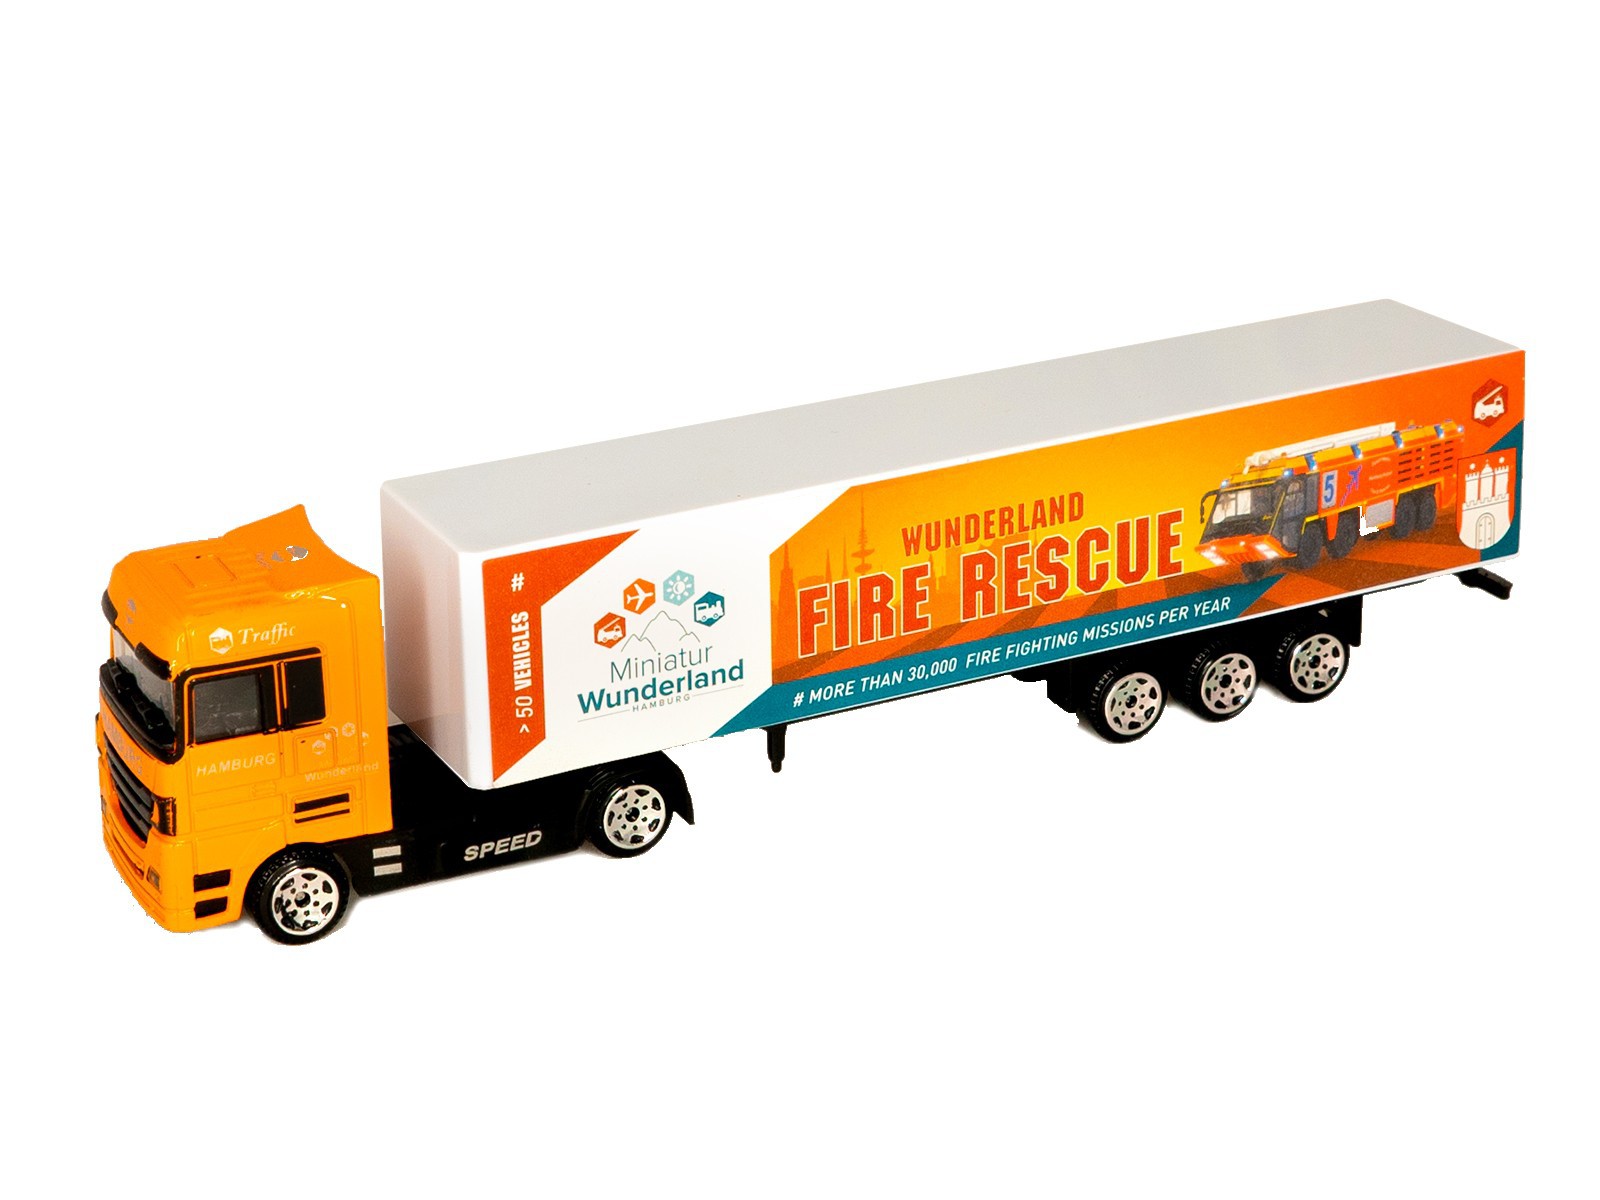 Miniatur Wunderland Truck "Fire Rescue"